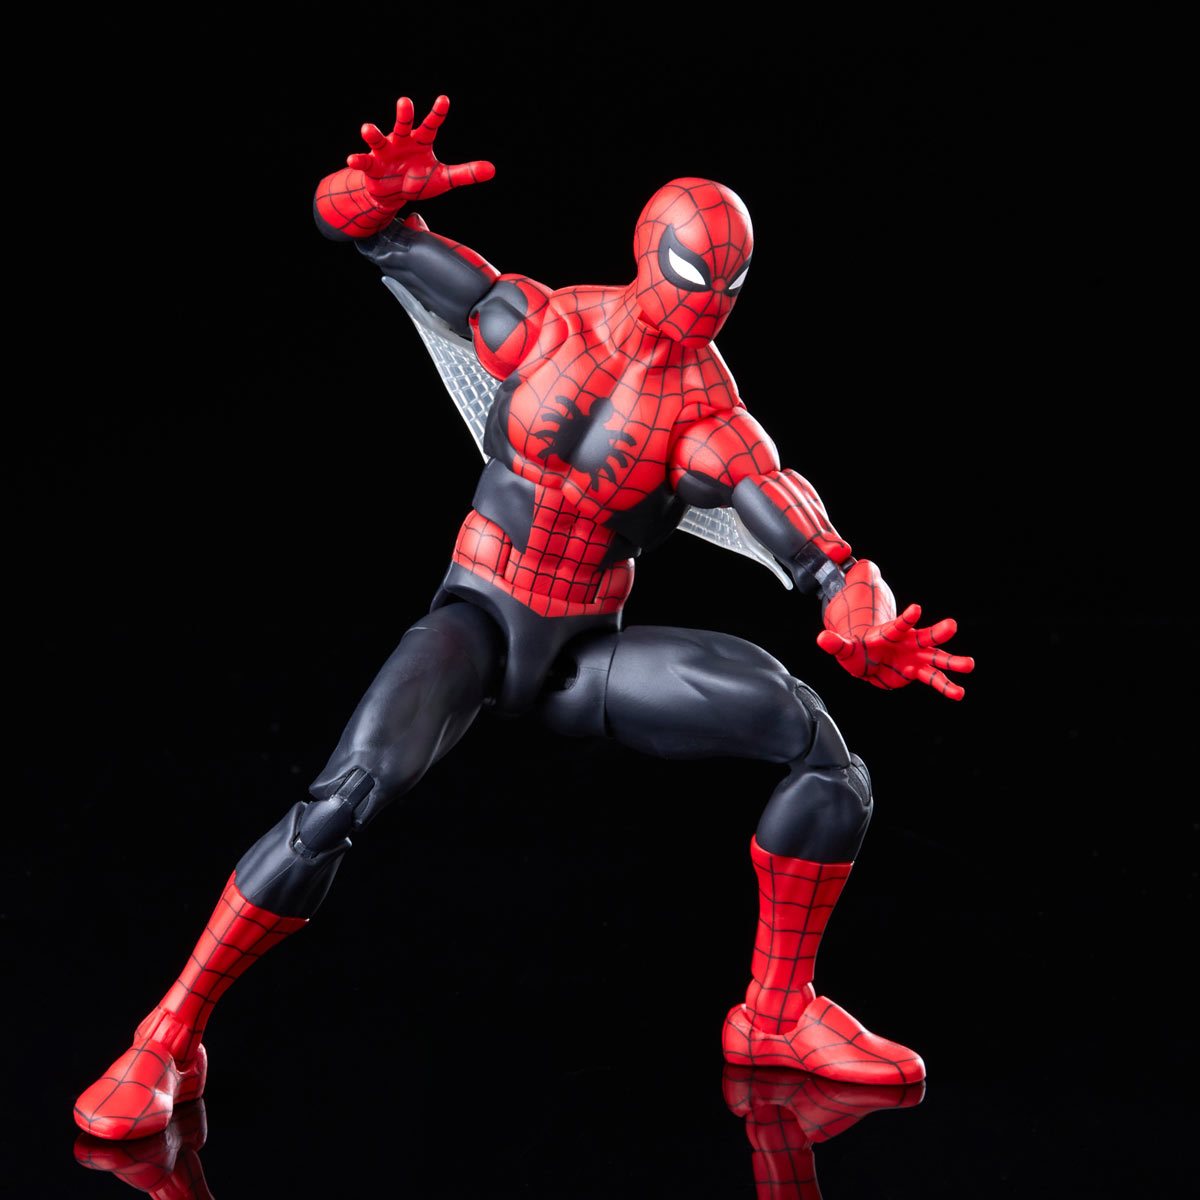 Marvel Spider-man Legends Action Figure : Target